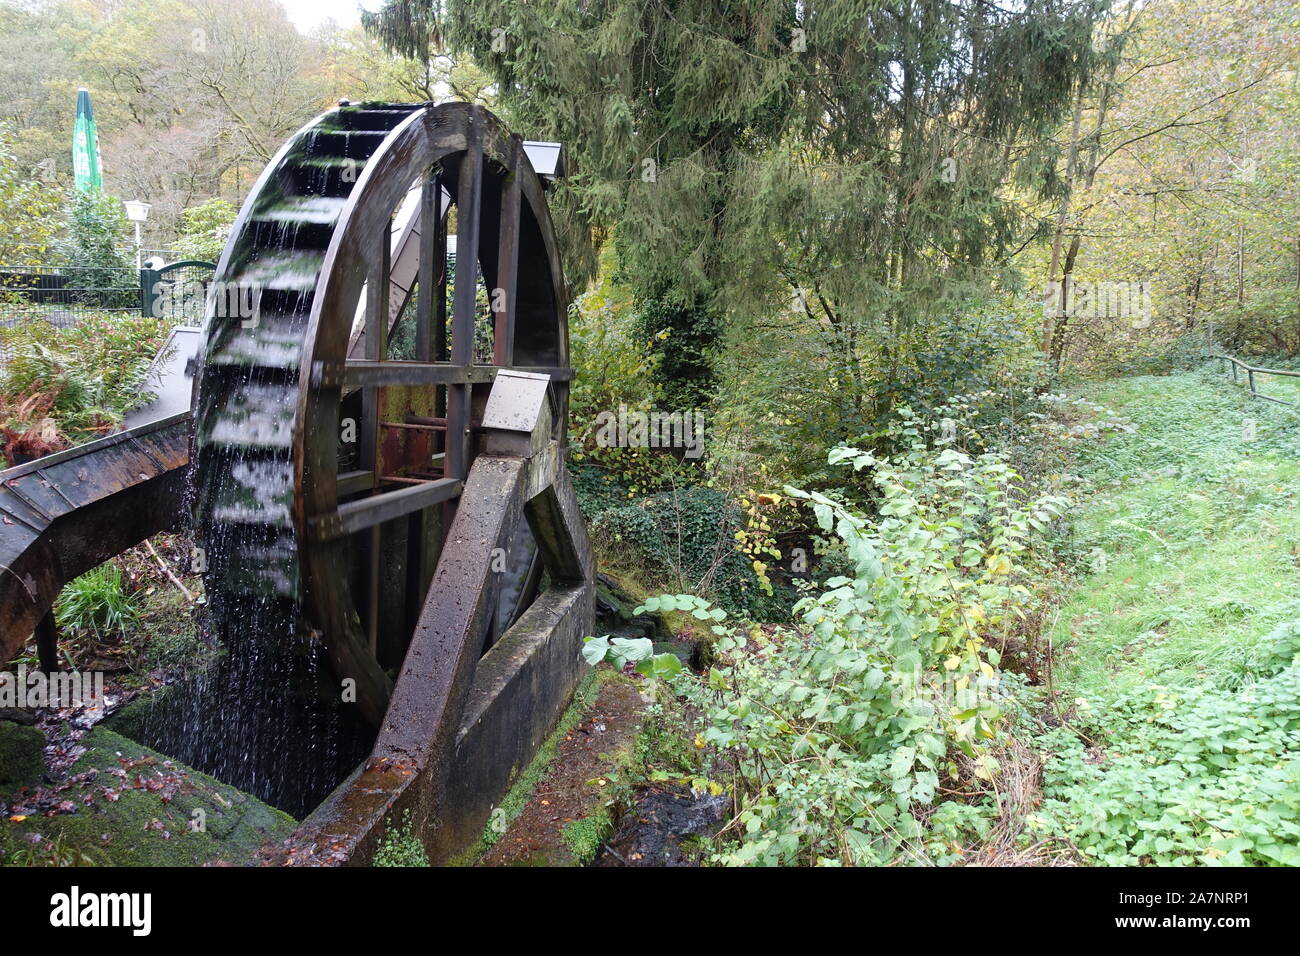 Wassermühle suis Laubach kurz vor der embouchure dans die Wied, Neuwied, Rheinland-Pfalz, Deutschland Banque D'Images